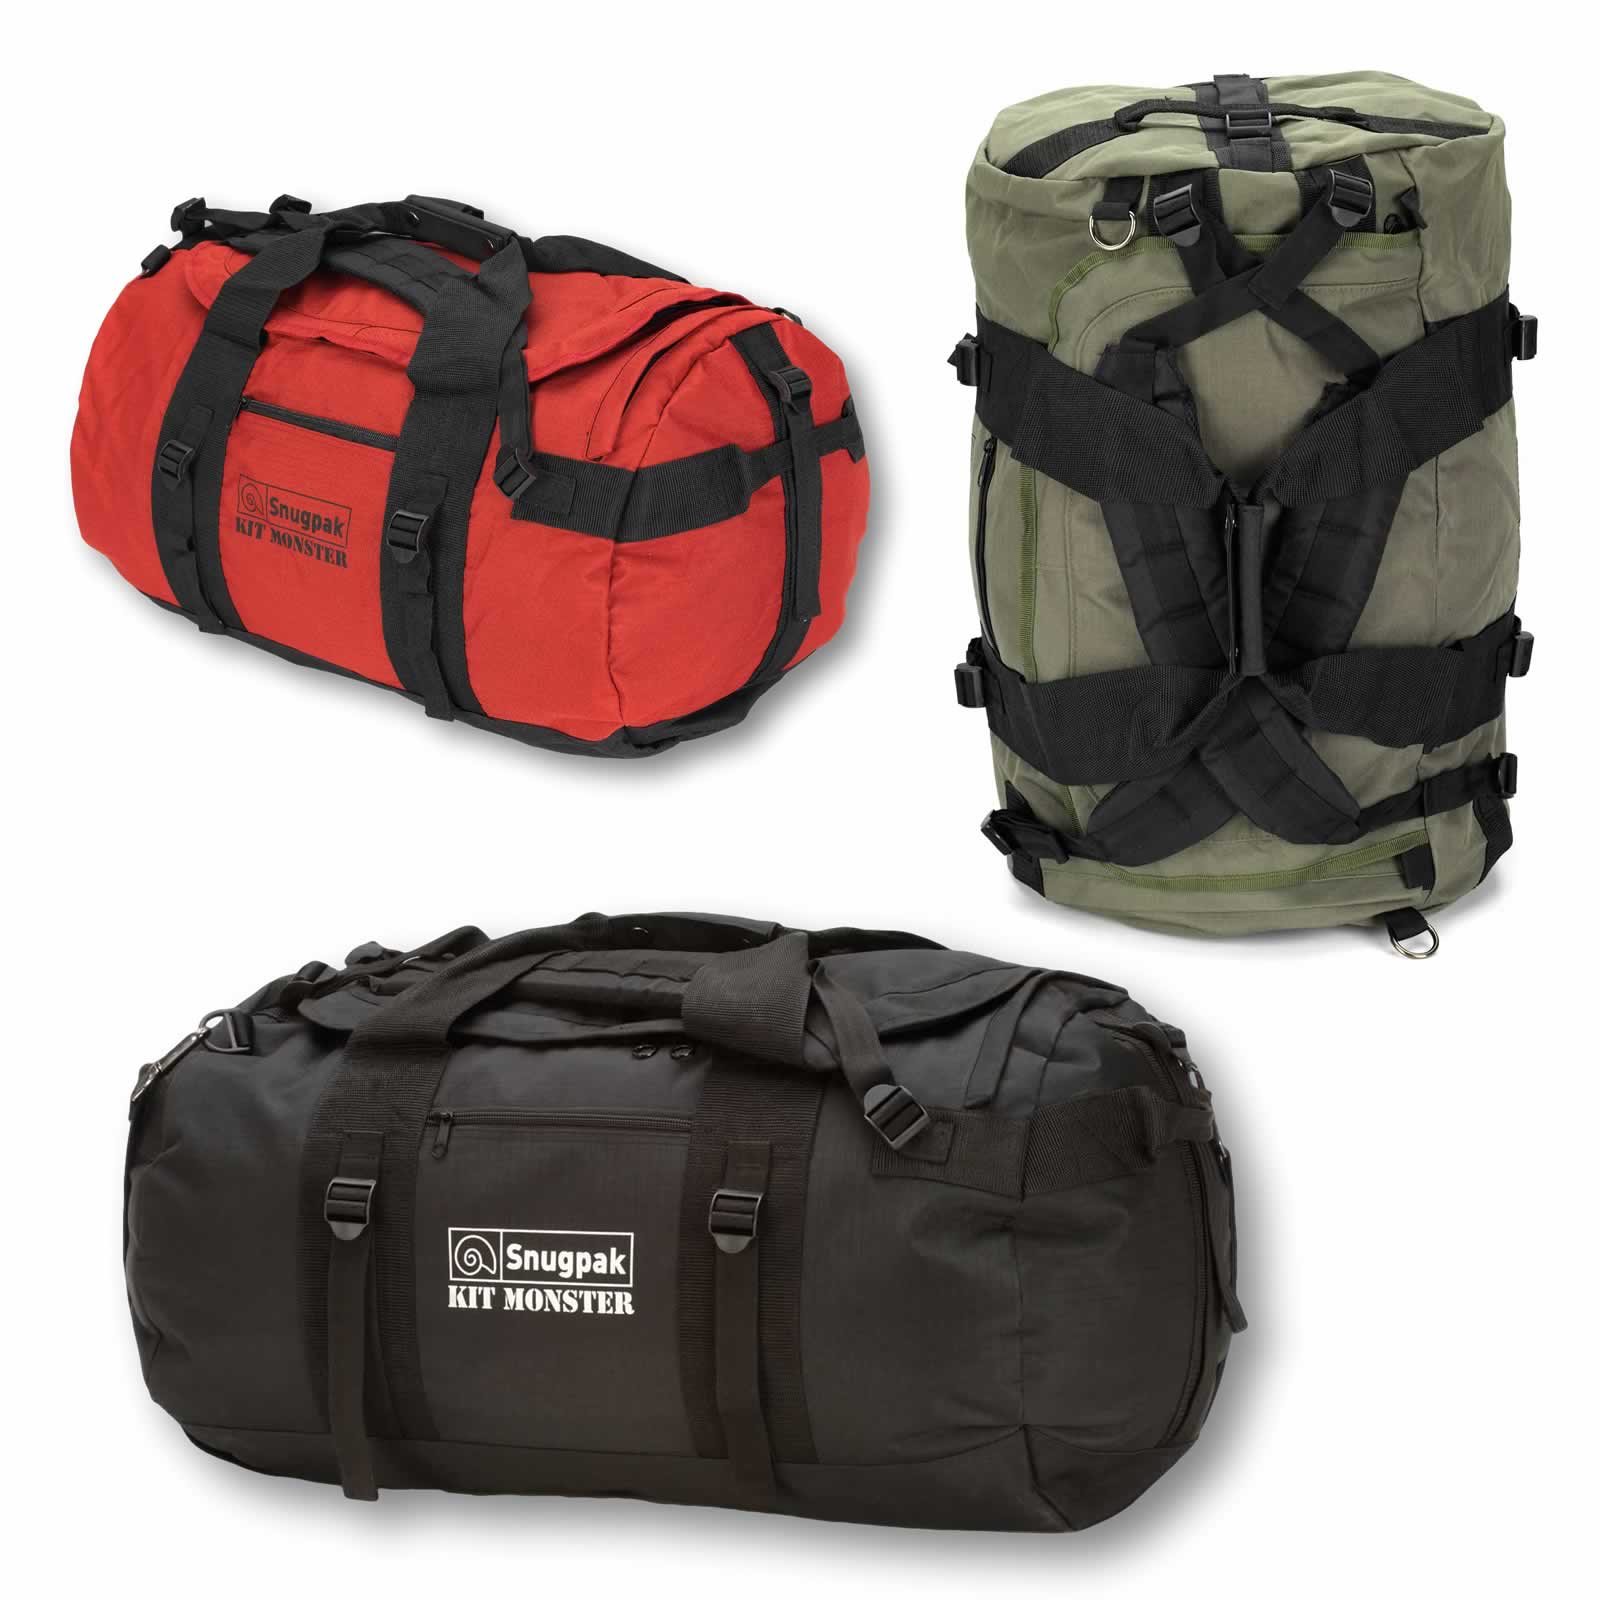 Snugpak Kit Monster 65 Litre Army Military Holdall Rucksack Duffle Travel Bag | eBay